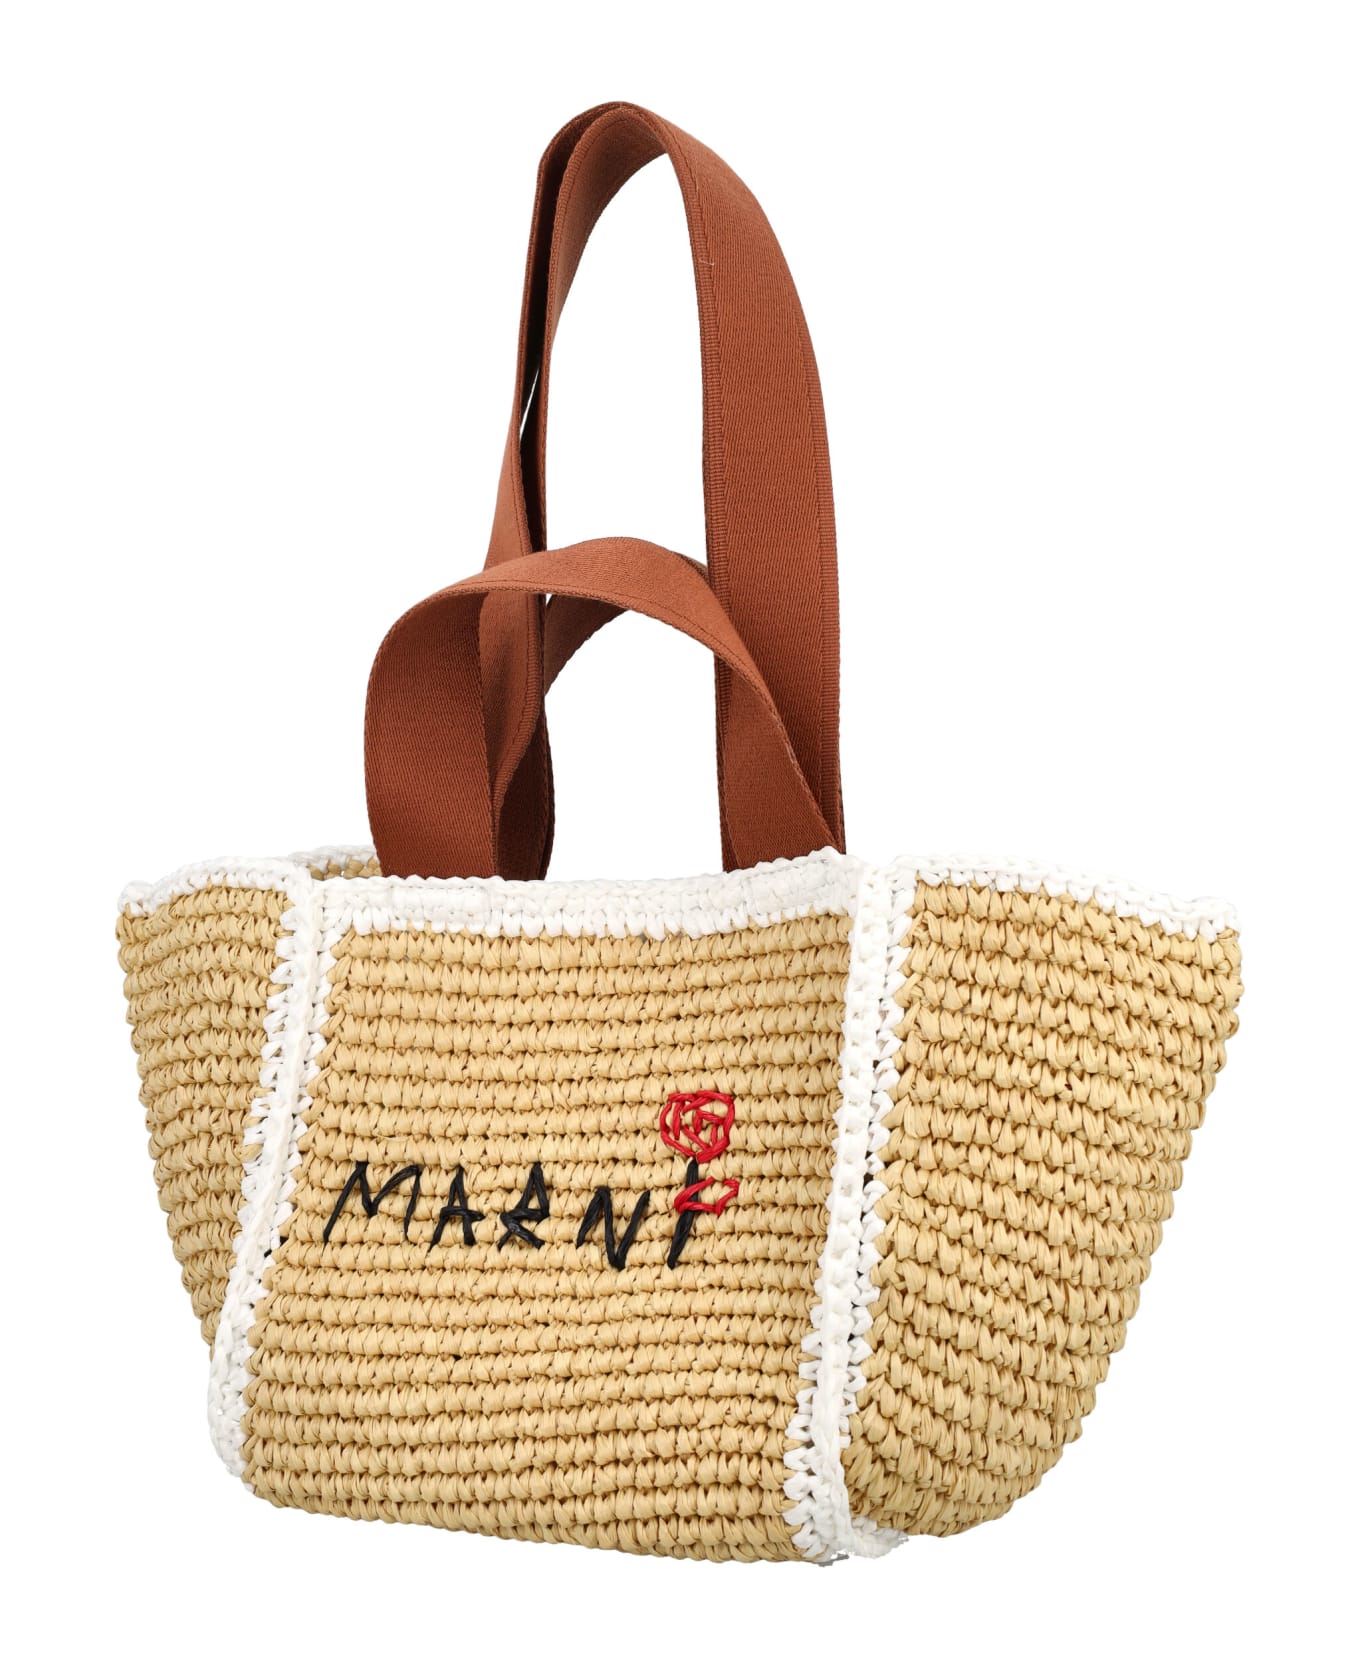 Marni Sillo Small Shopper - NATURAL/WHITE/RUST